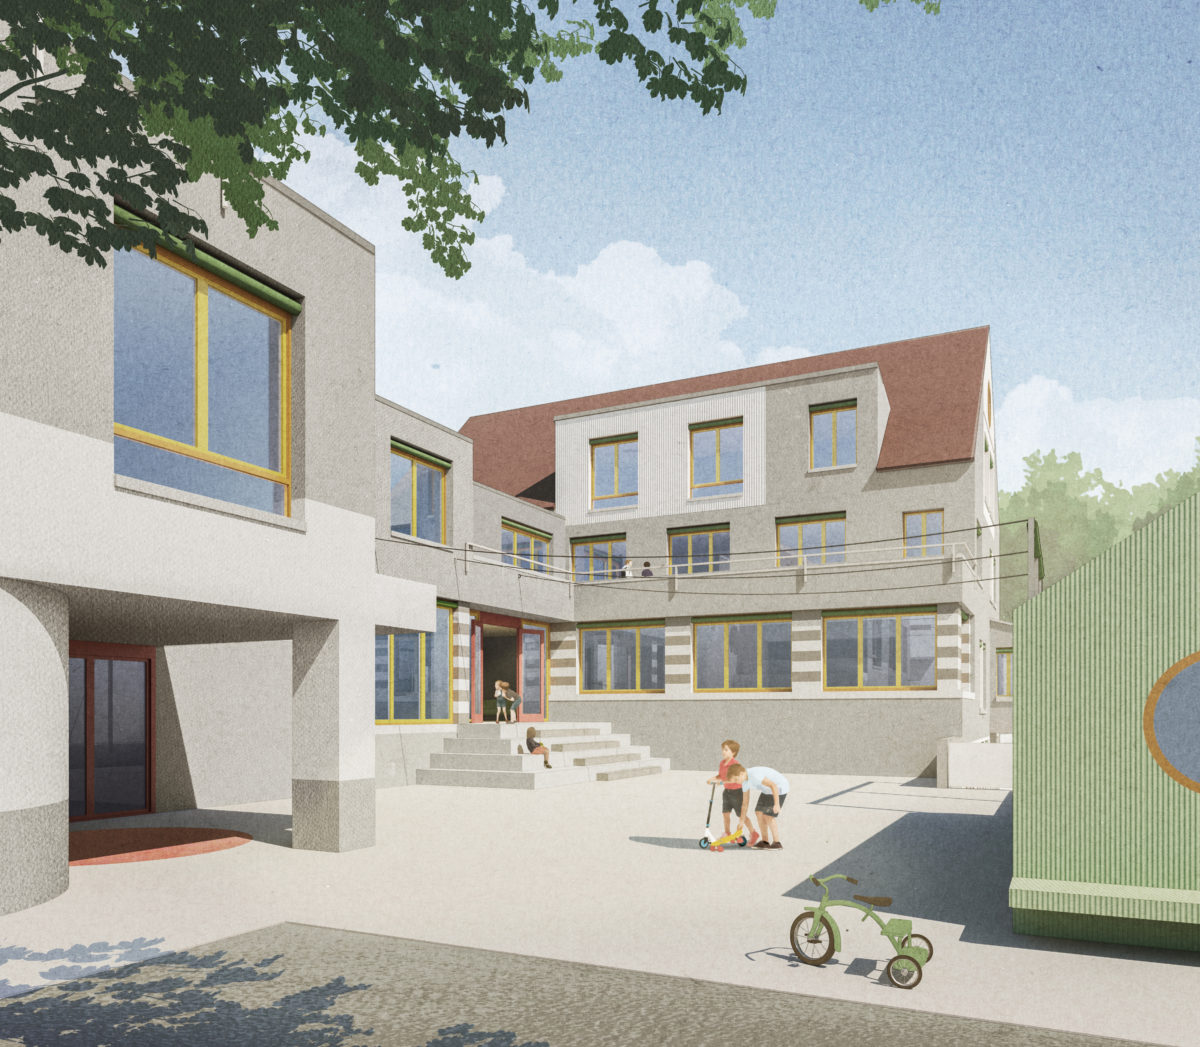 Rafaelschule - Erweiterung einer heilpädagogischen Tagesschule - Schmid Schaerer Architekten Zürich